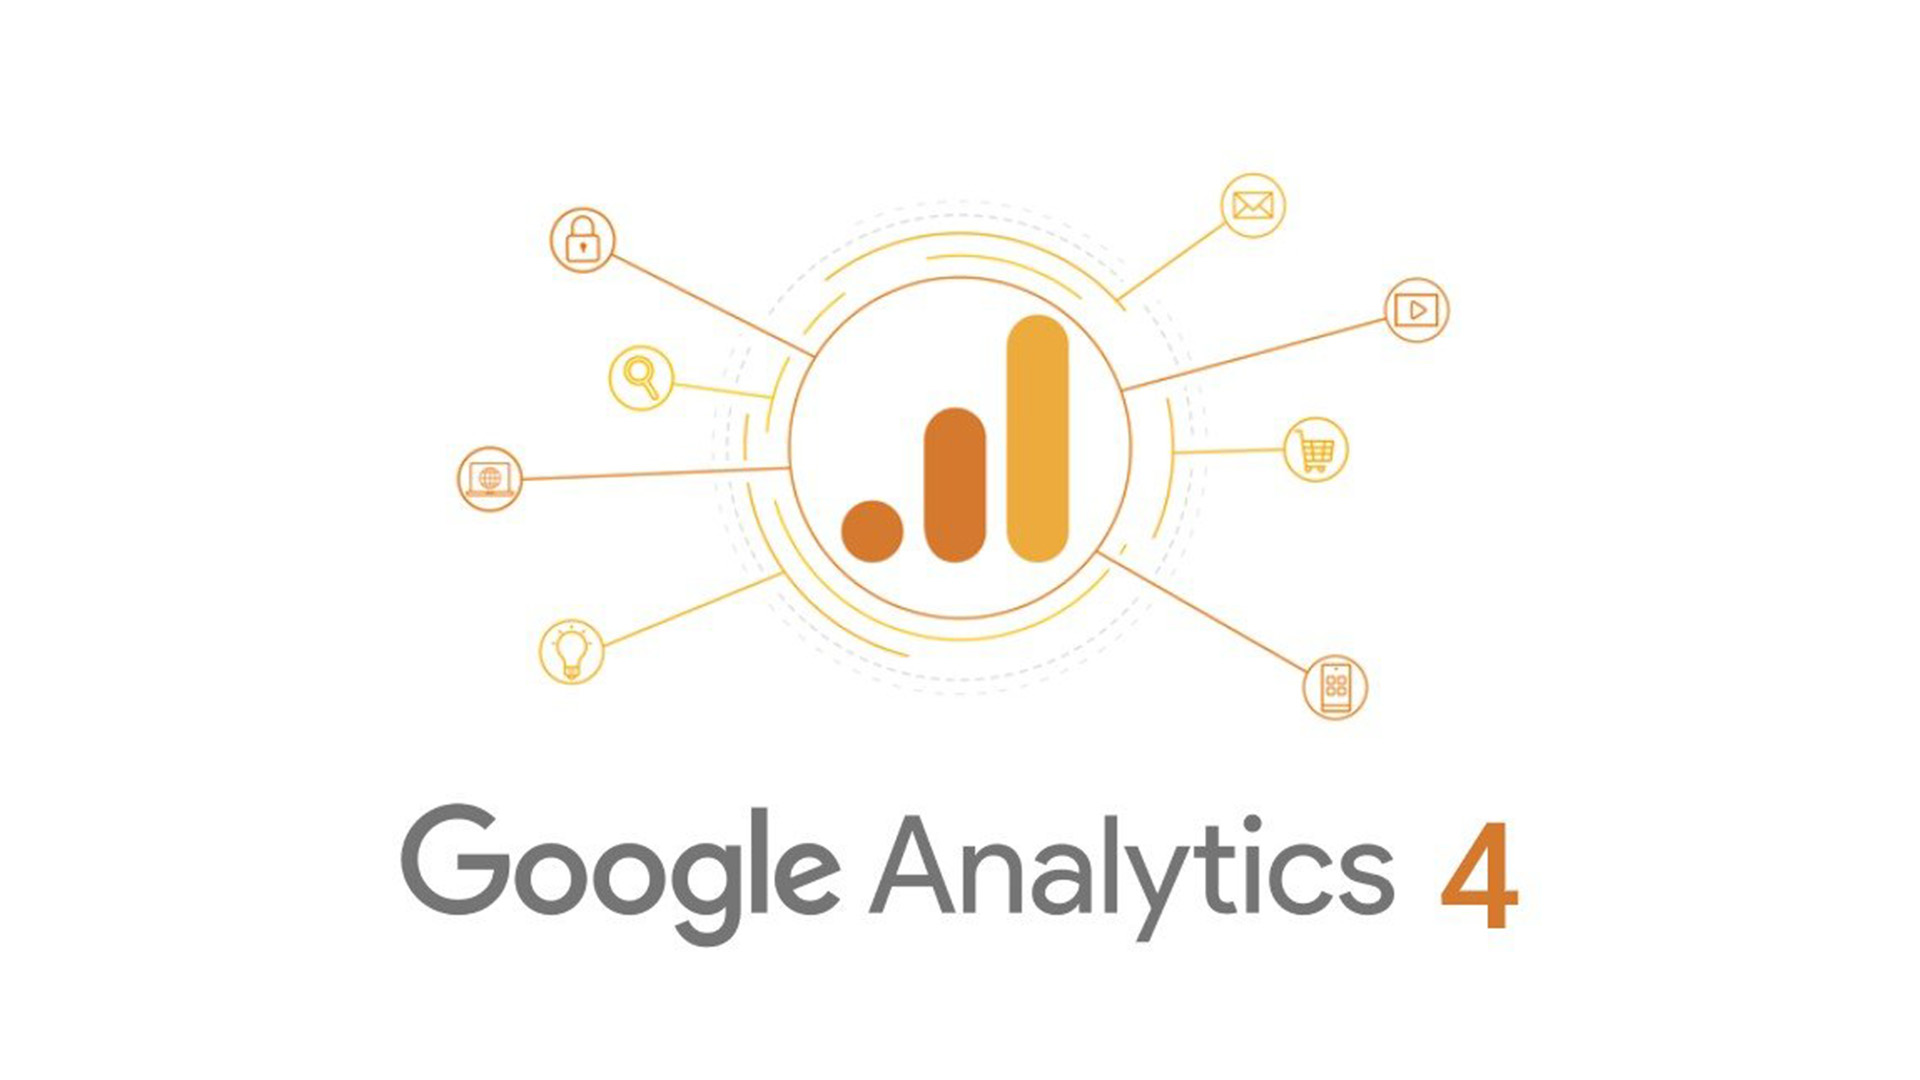 Google Analytics 4 replacing Universal Analytics